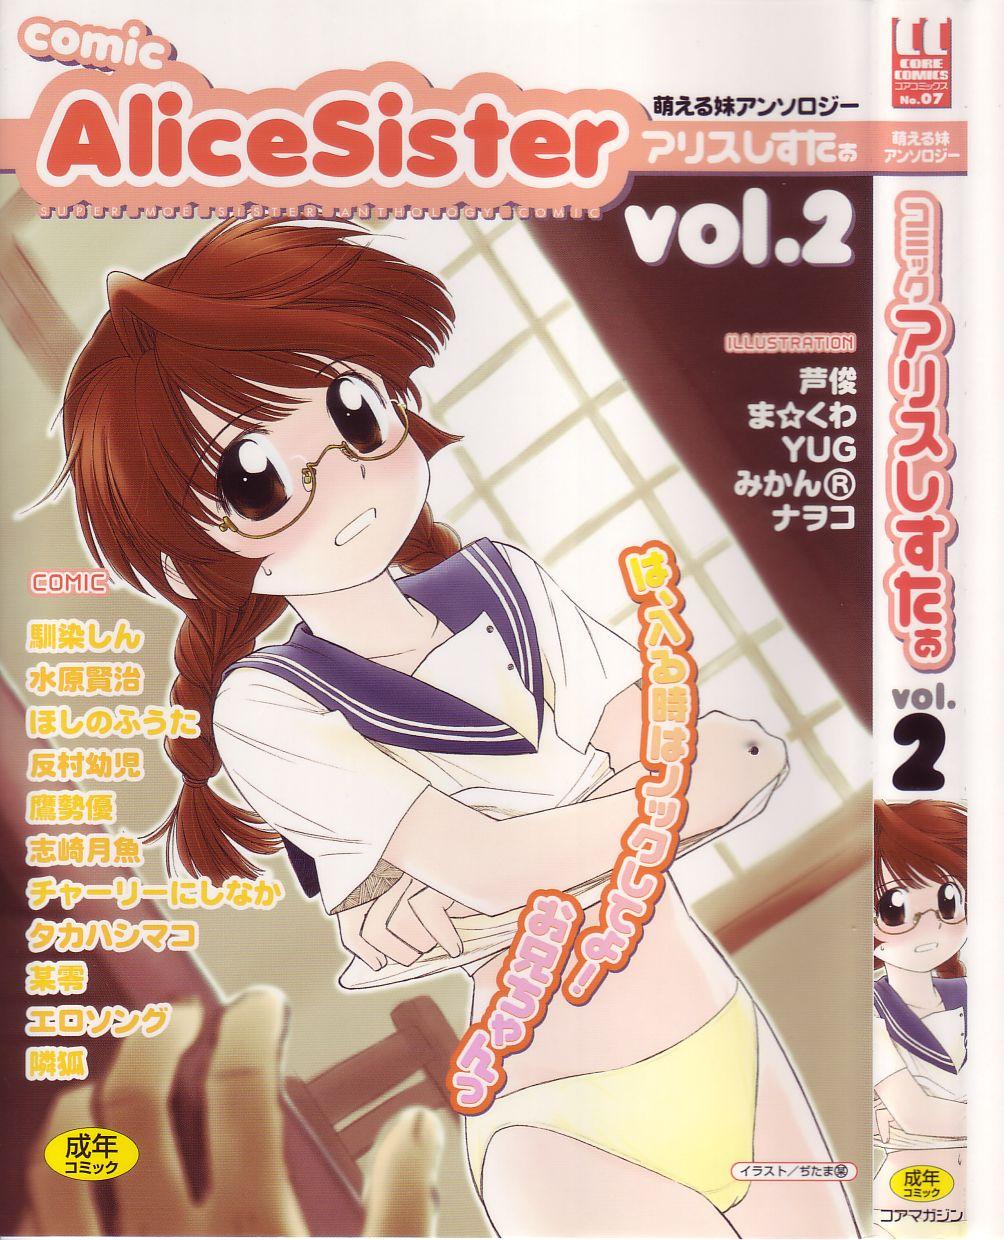 Euro Comic Alice Sister Vol.2 Insertion - Picture 1